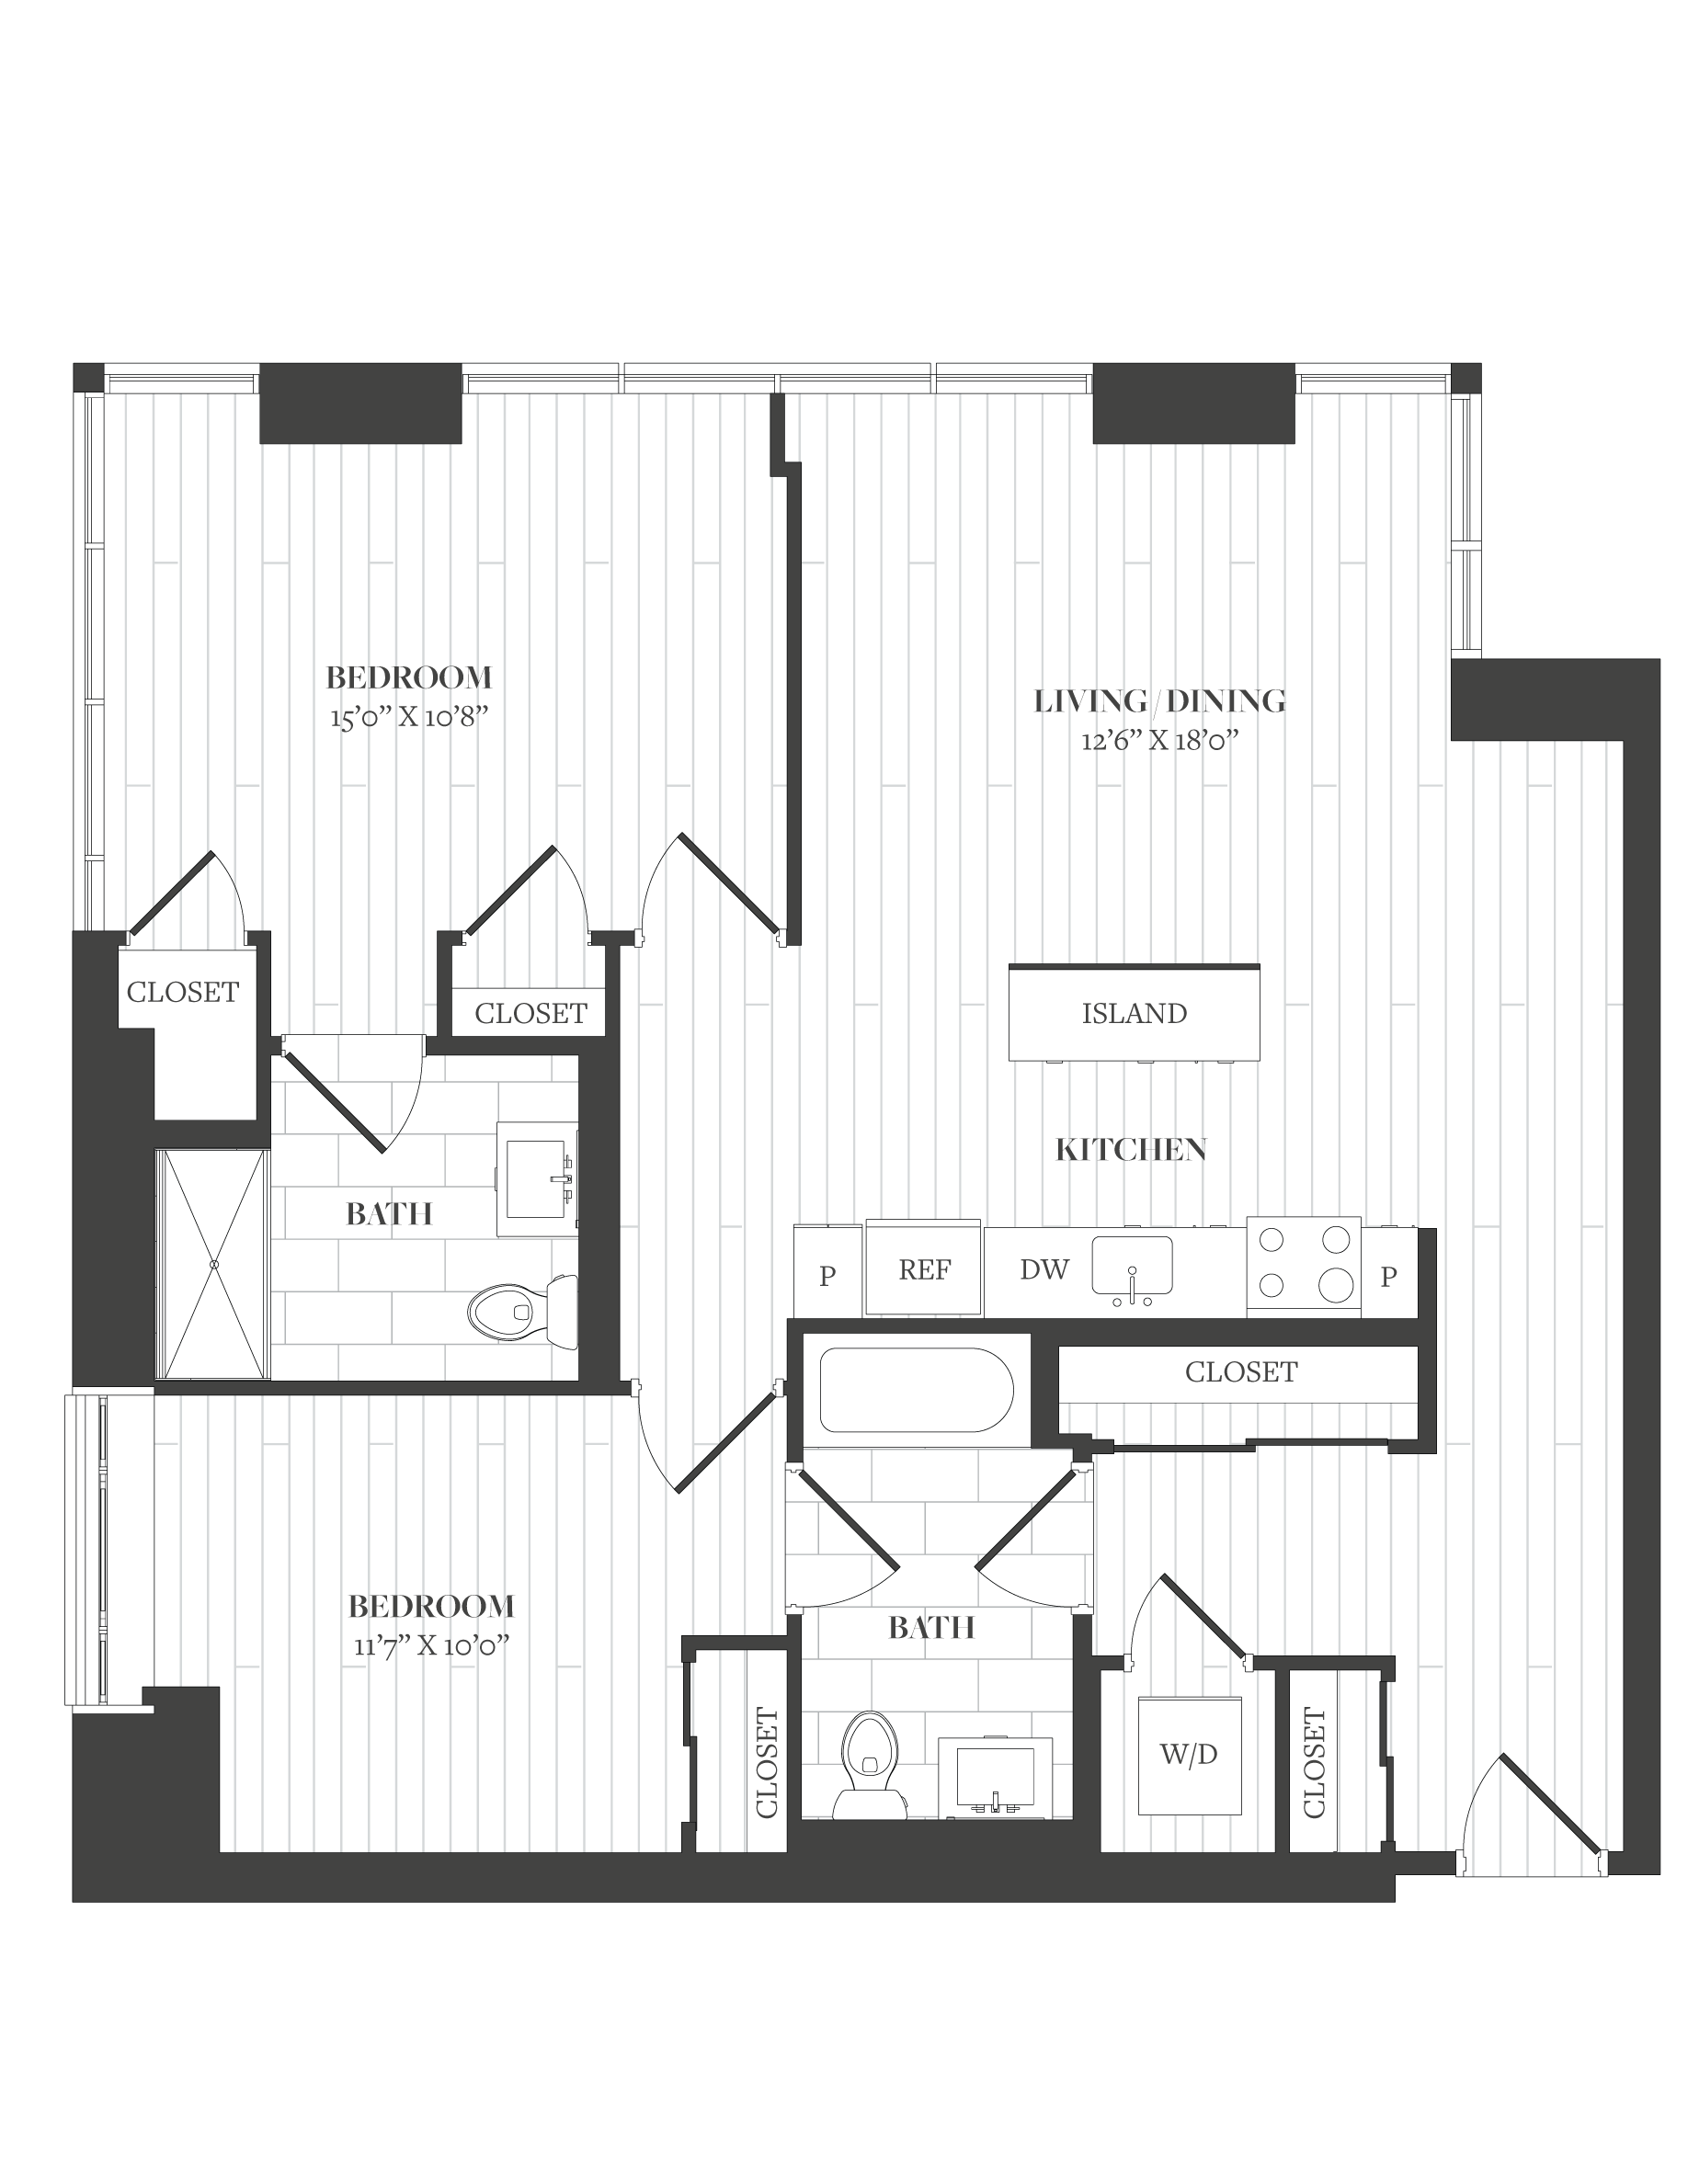 Floorplan image of unit 507